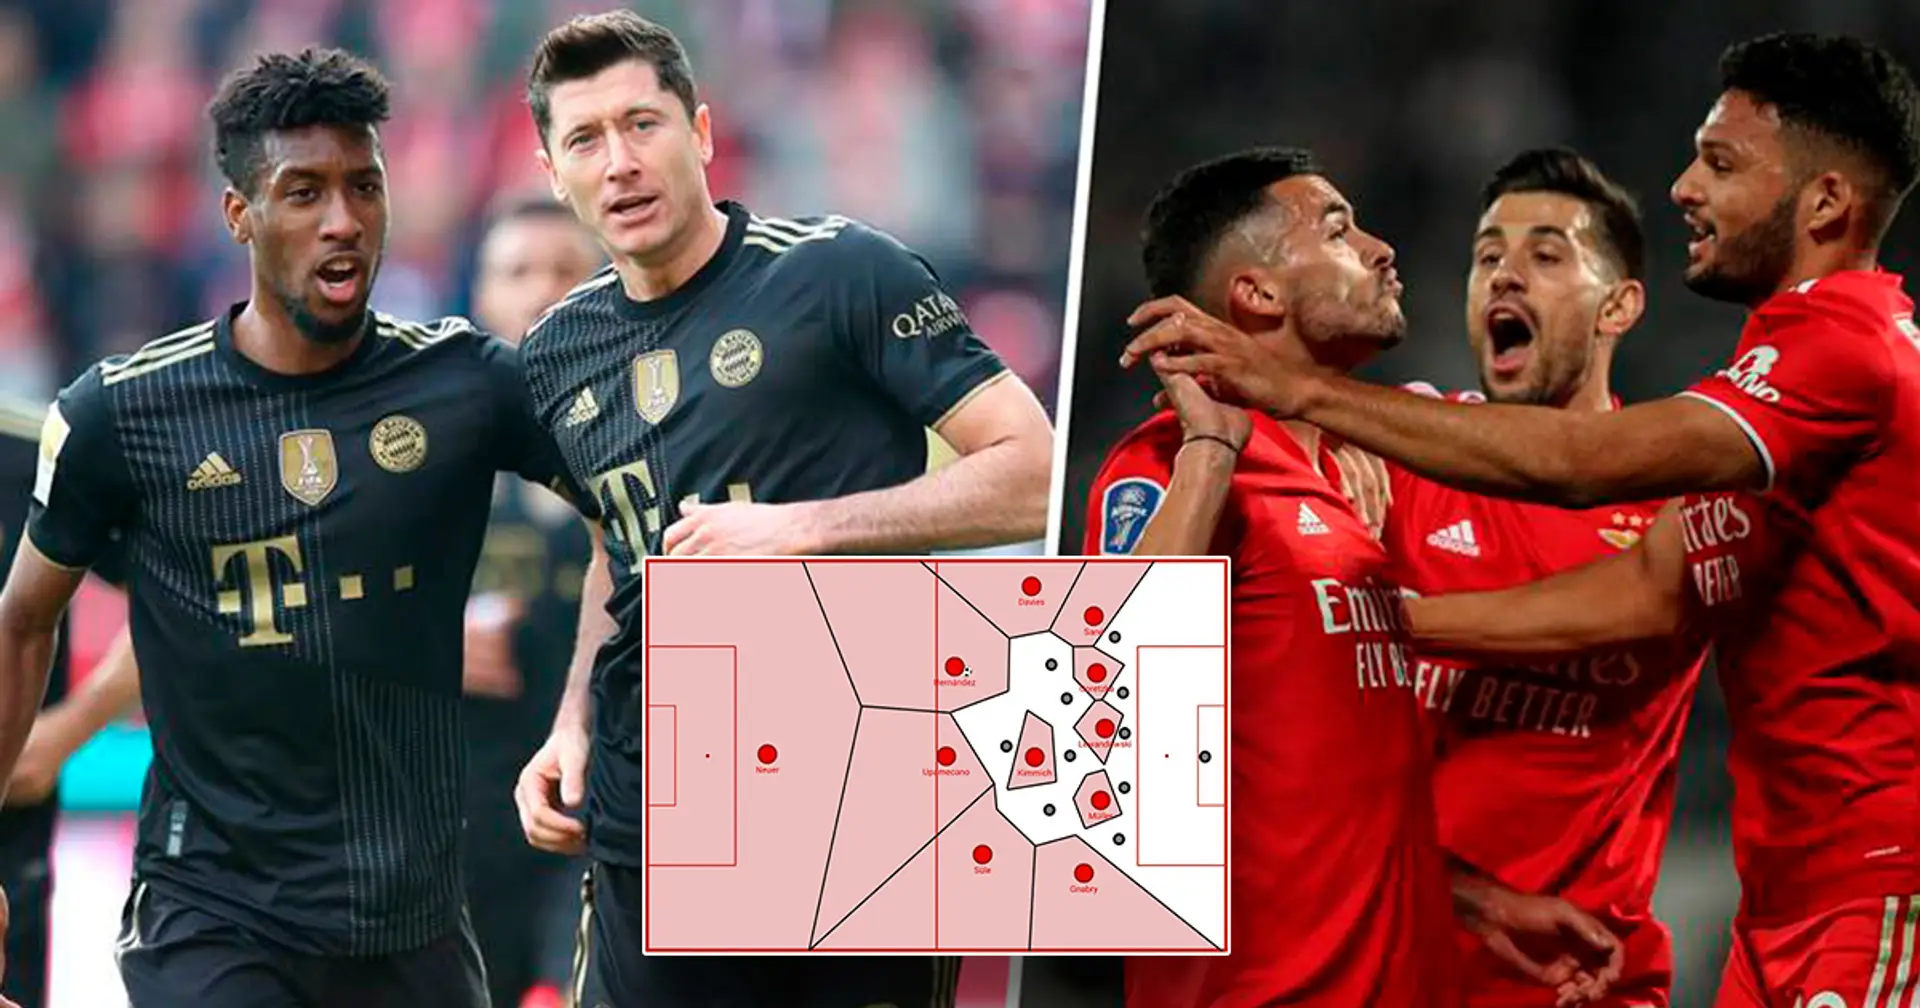 Vorschau auf das Spiel gegen Benfica: Das sind die vermeintlichen Defensivprobleme des FC Bayern